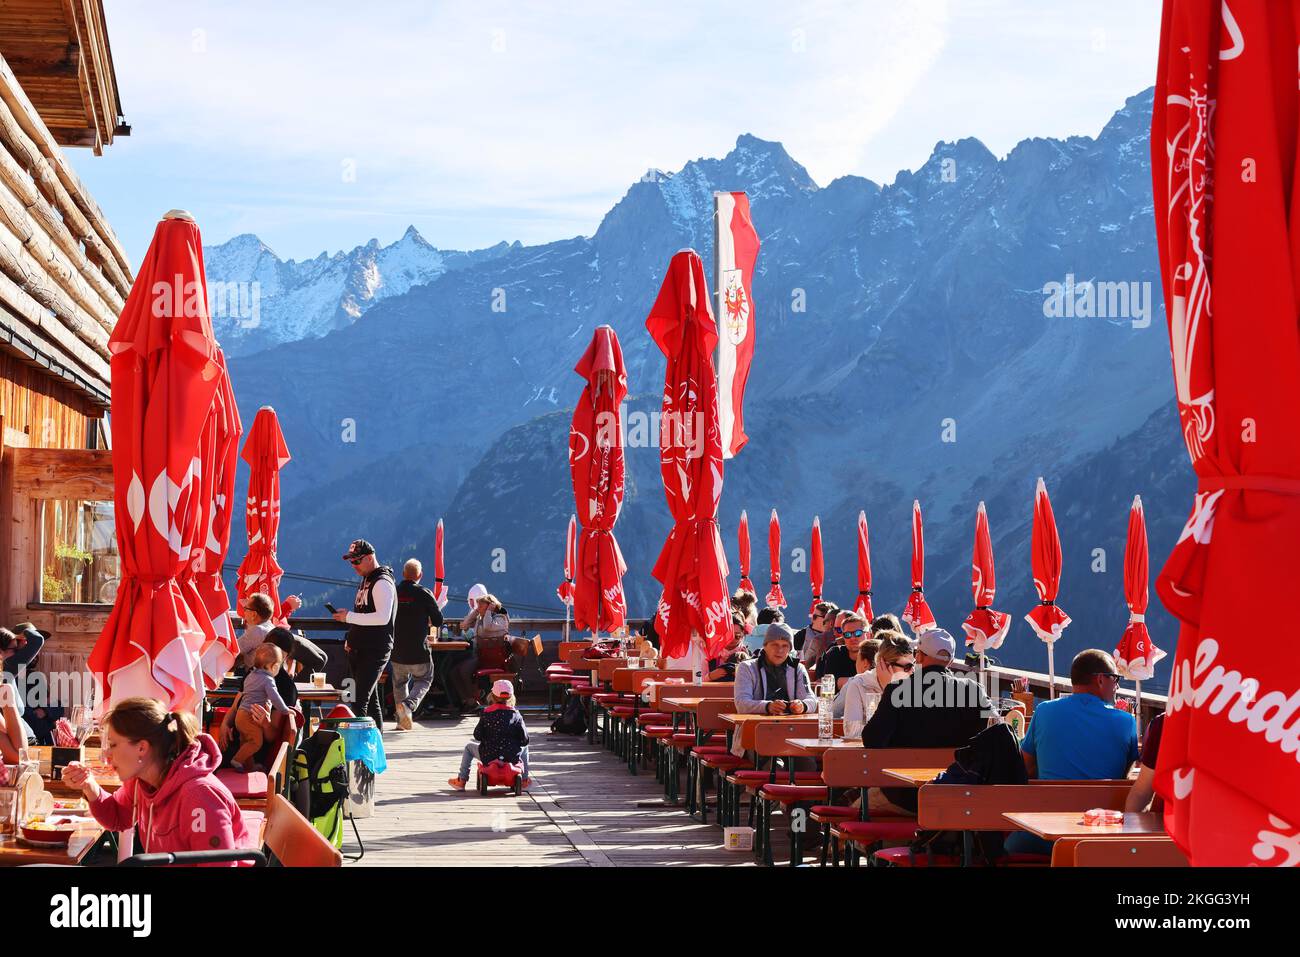 Biergarten, Erholung von einer harten Bergtour in einer romantischen Berghütte mit toller Aussicht bei einem Urlaub im Zillertal Stock Photo